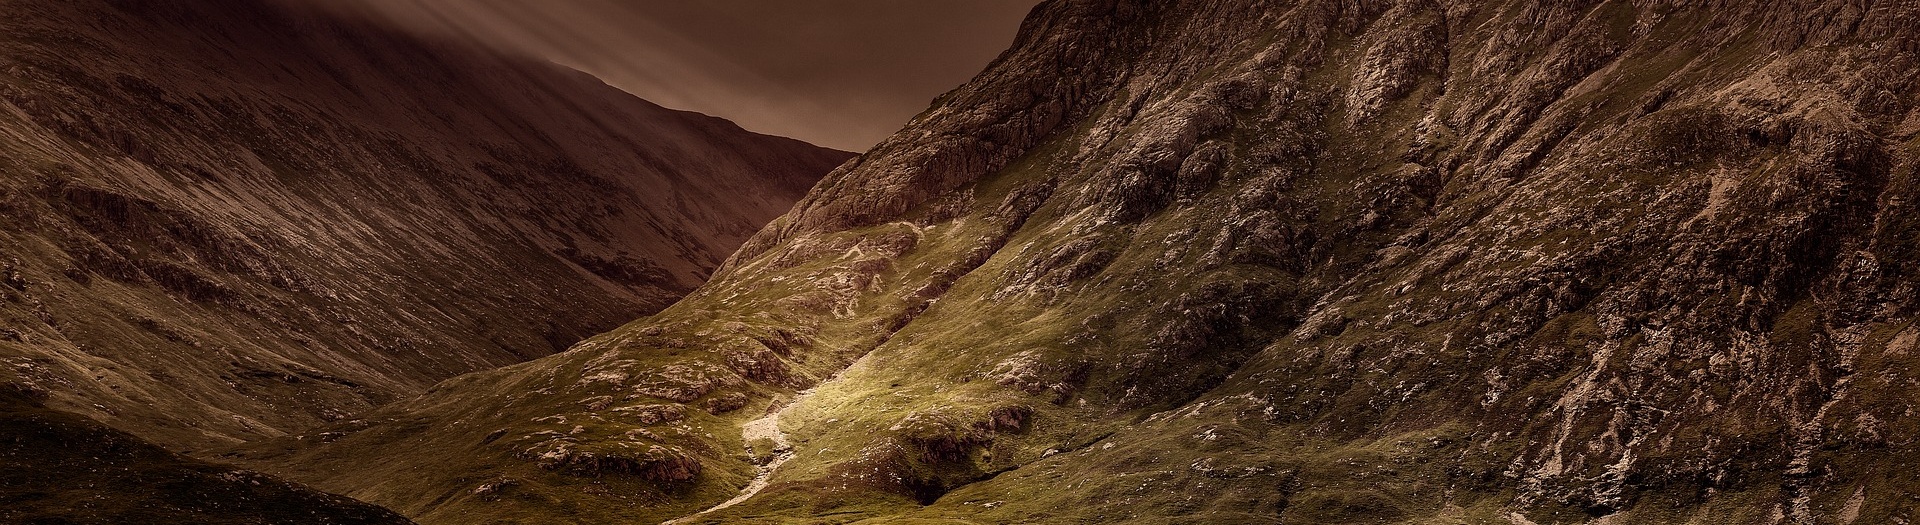 Le Loch Ness et les Highlands : l'Ecosse sauvage en liberté